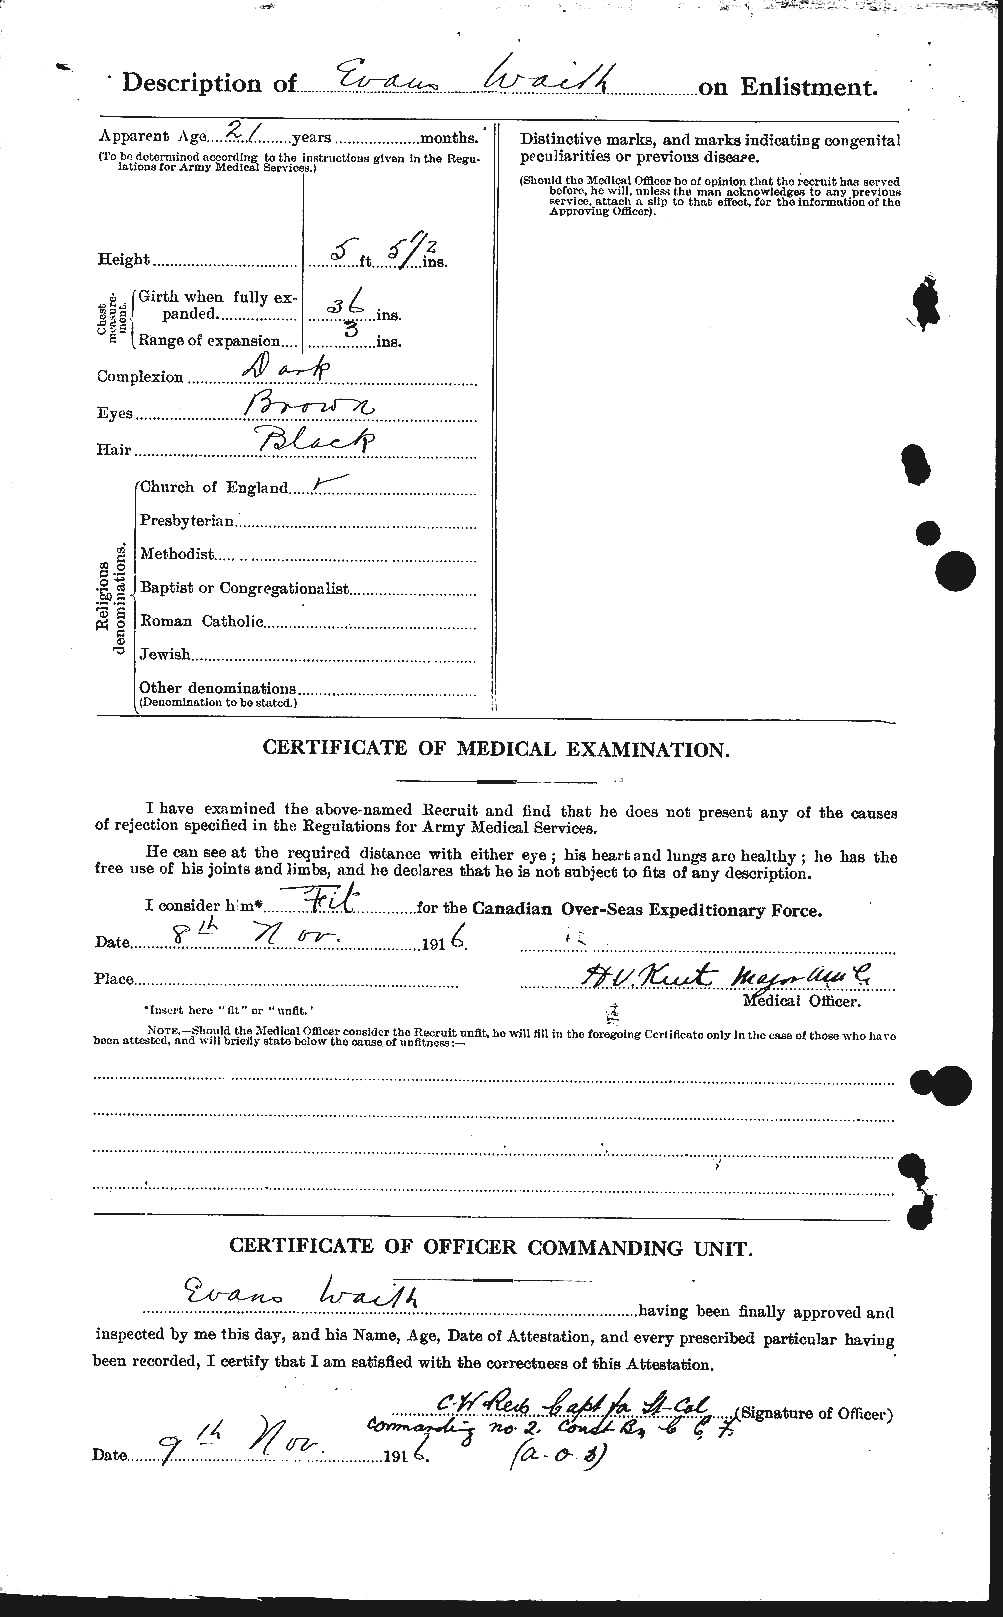 Dossiers du Personnel de la Première Guerre mondiale - CEC 654335b